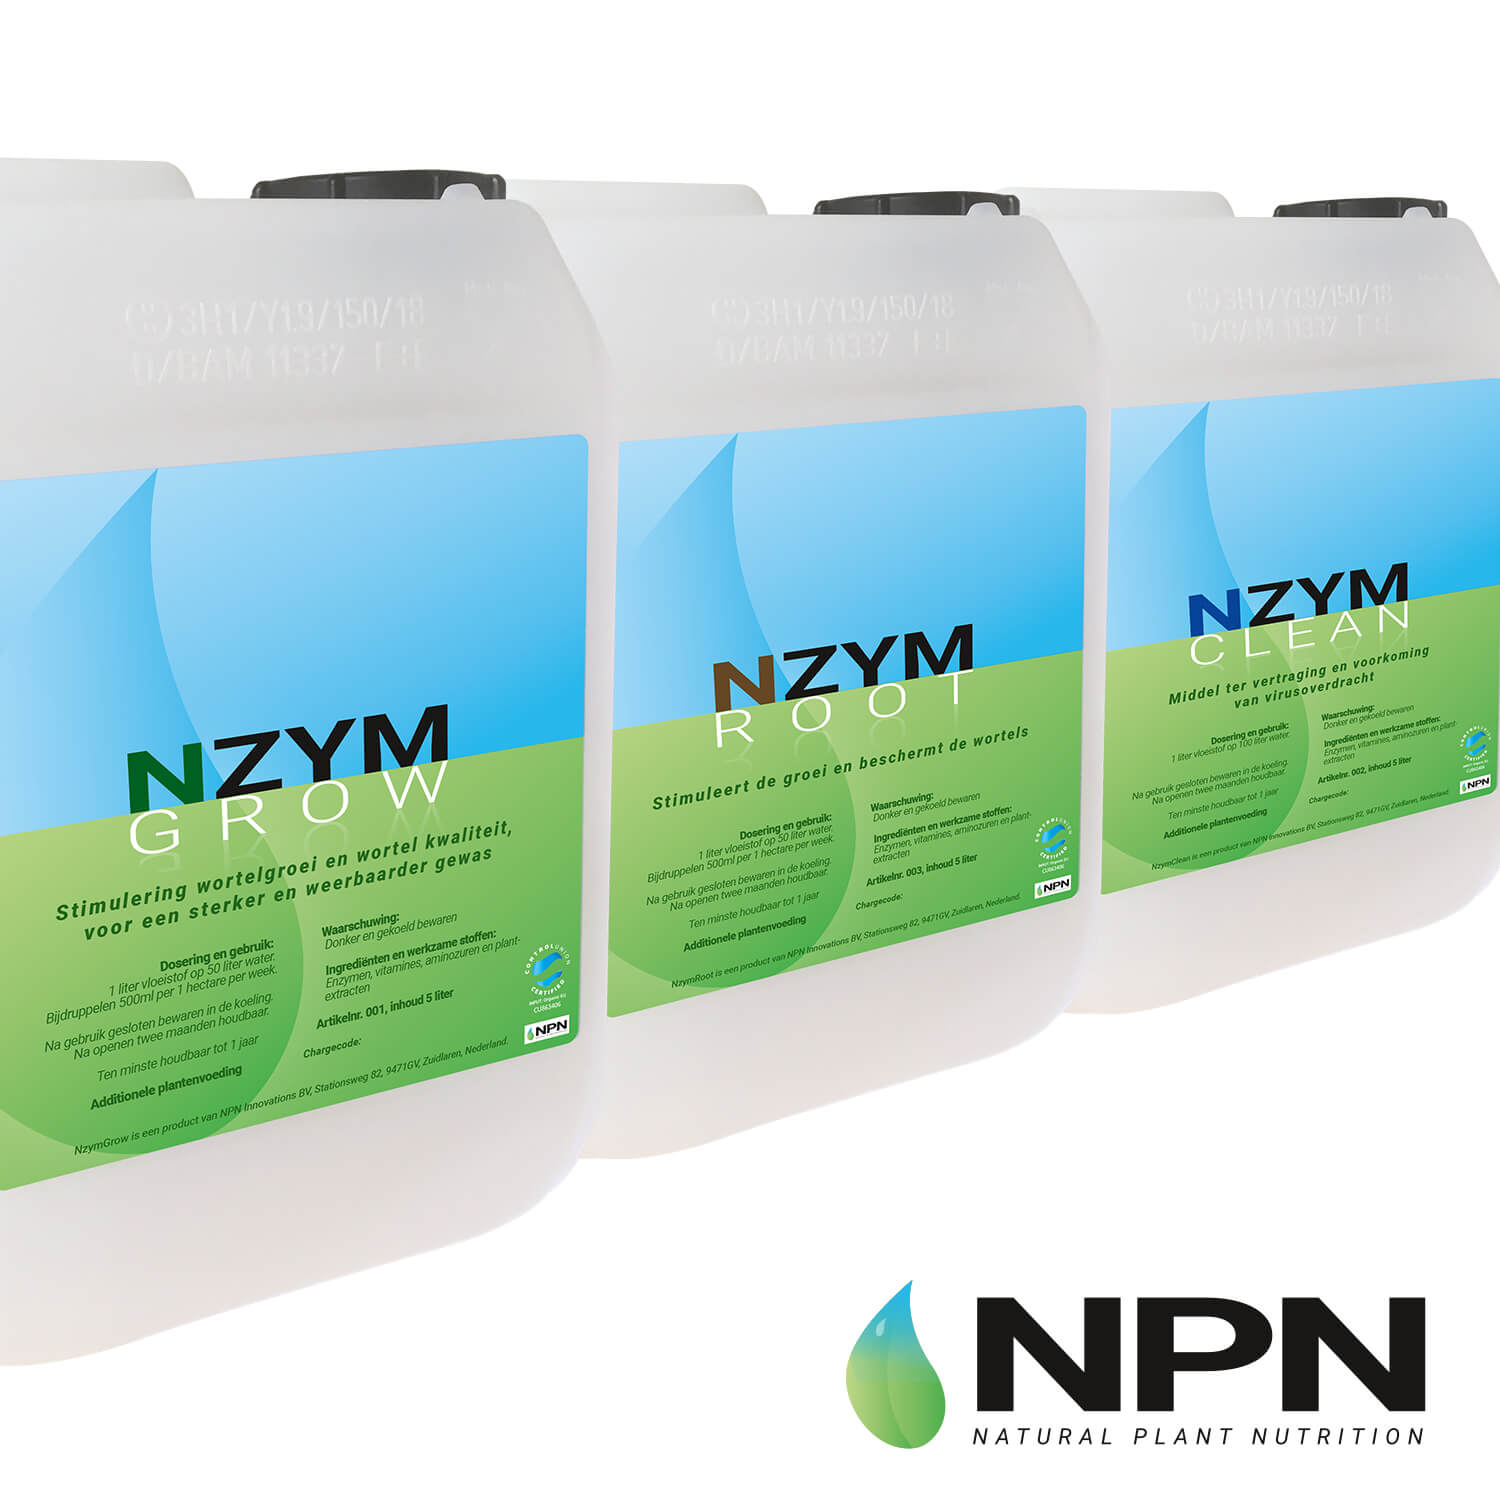 Verpakking designer NPN NzymGROW ROOT CLEAN JeroenWebsitemarketing